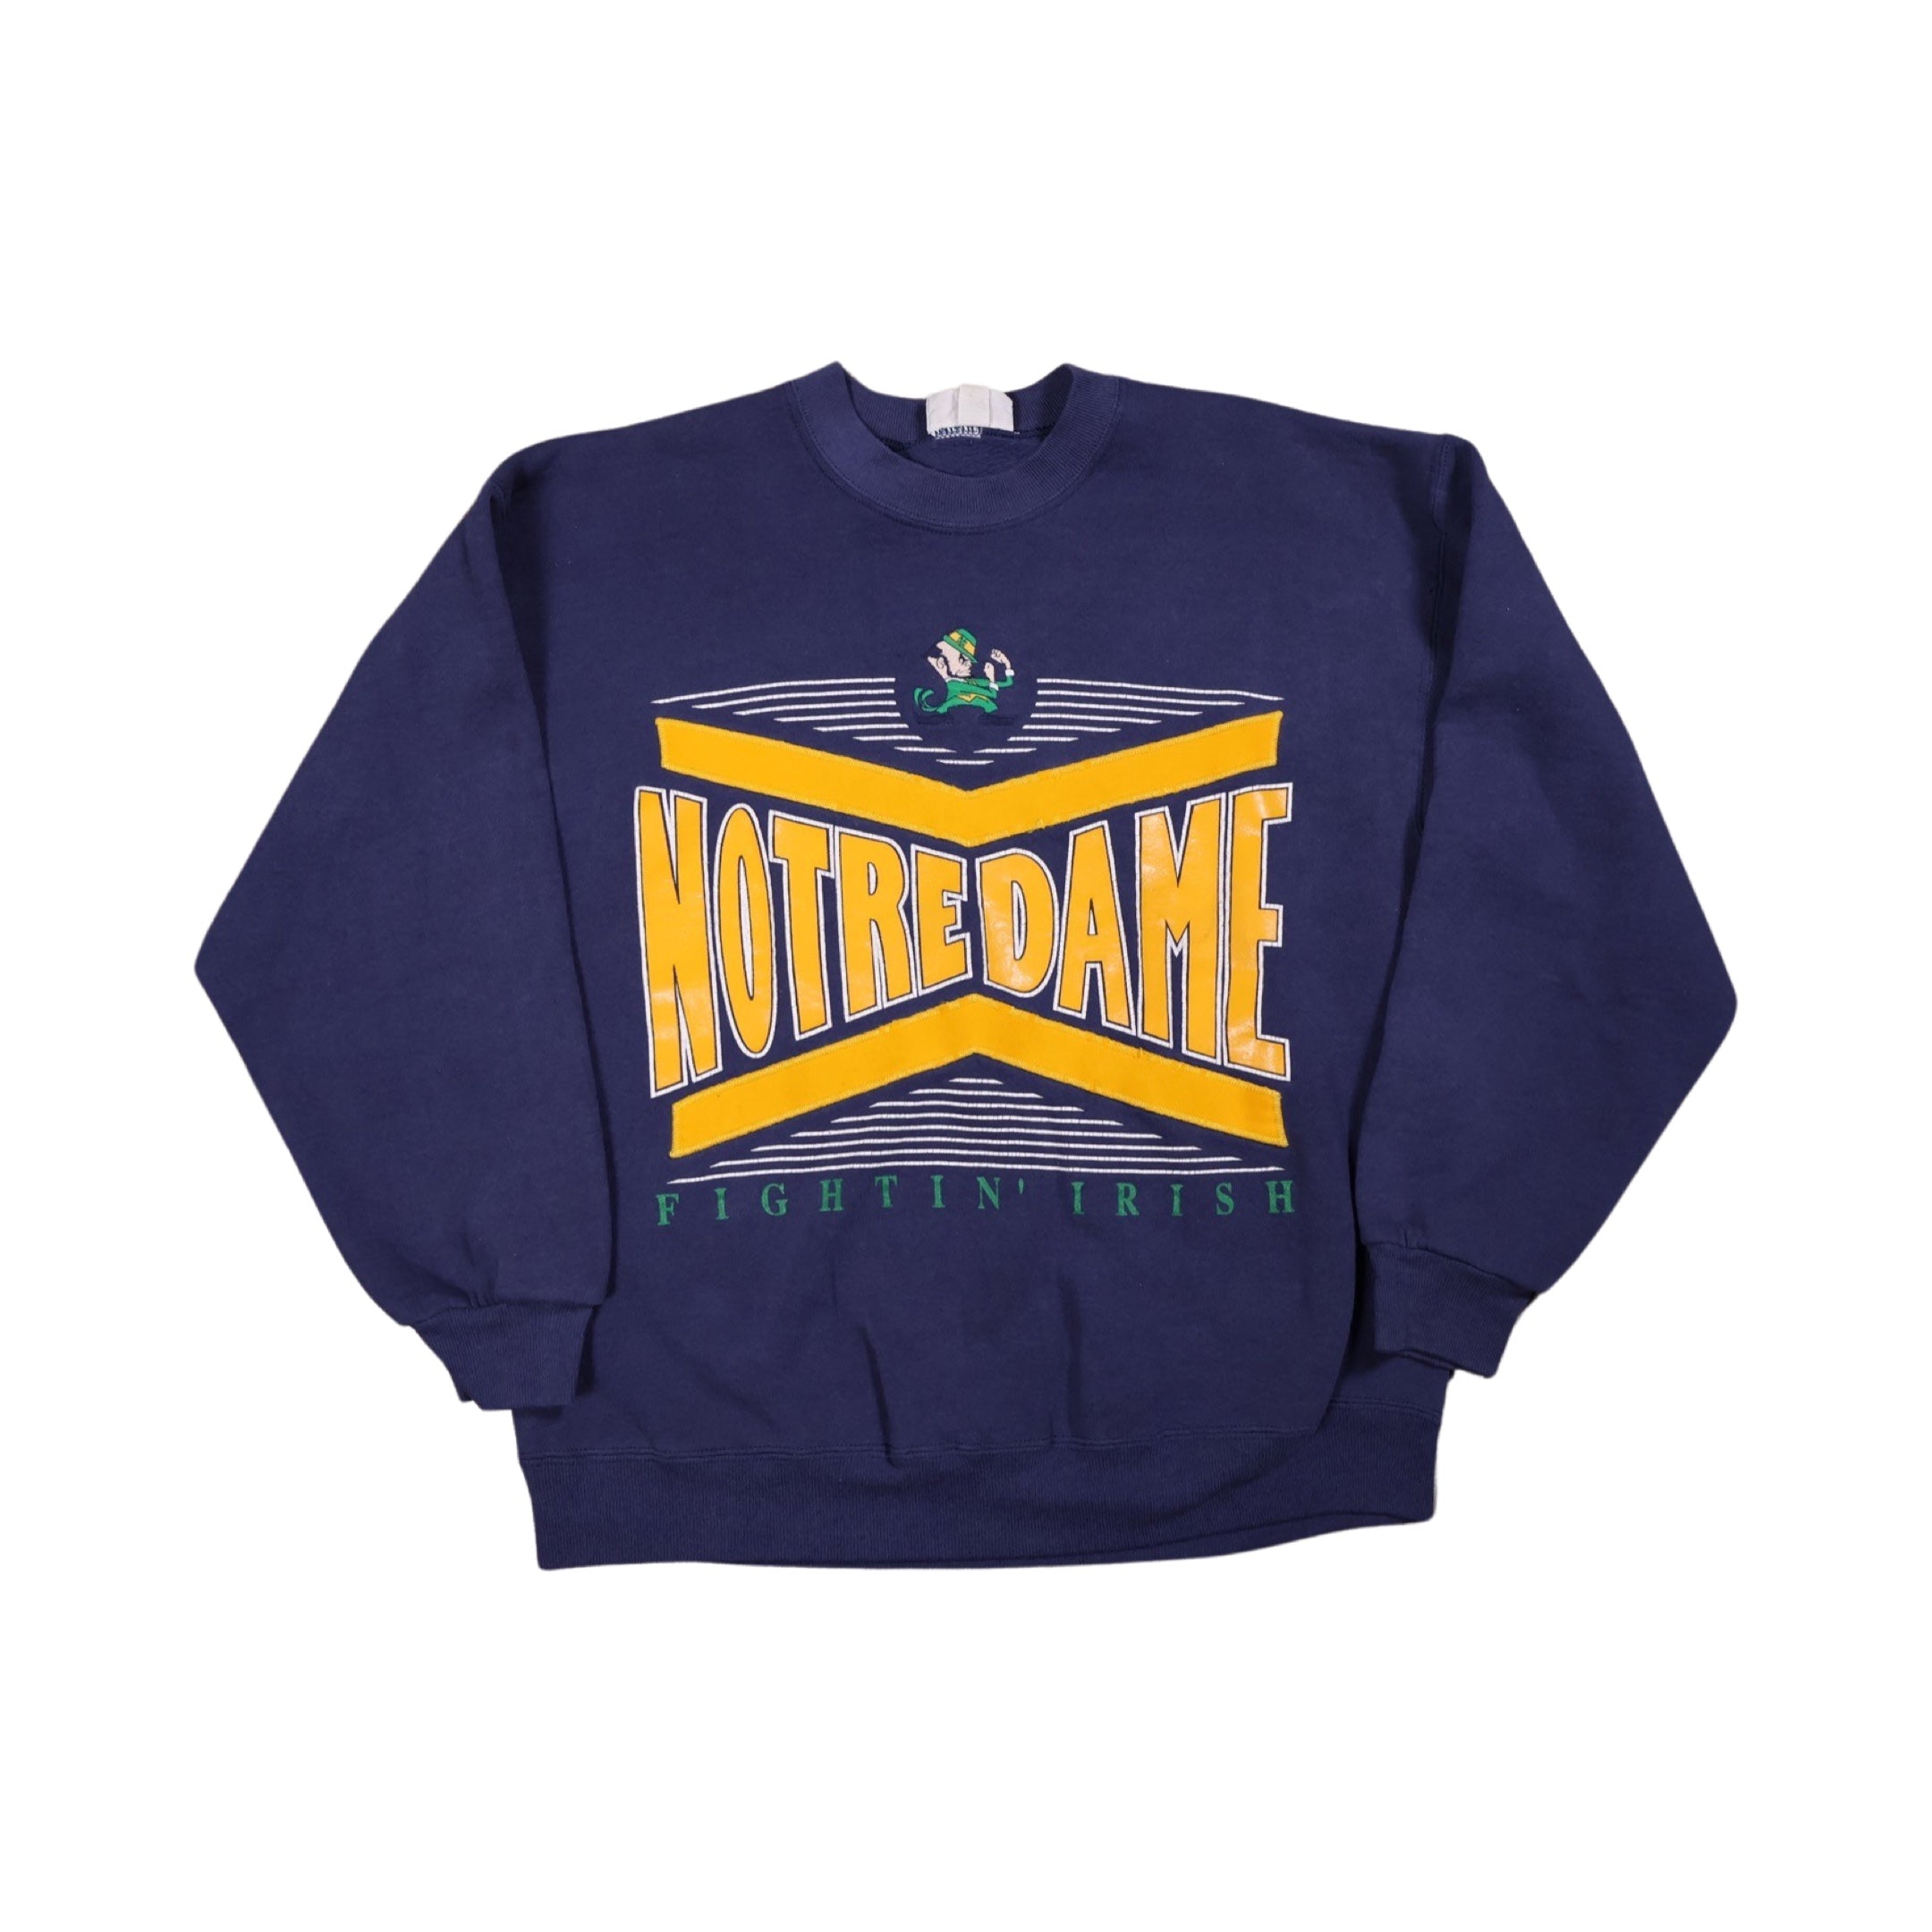 Notre Dame Fighting Irish 90s Sweater (Medium)